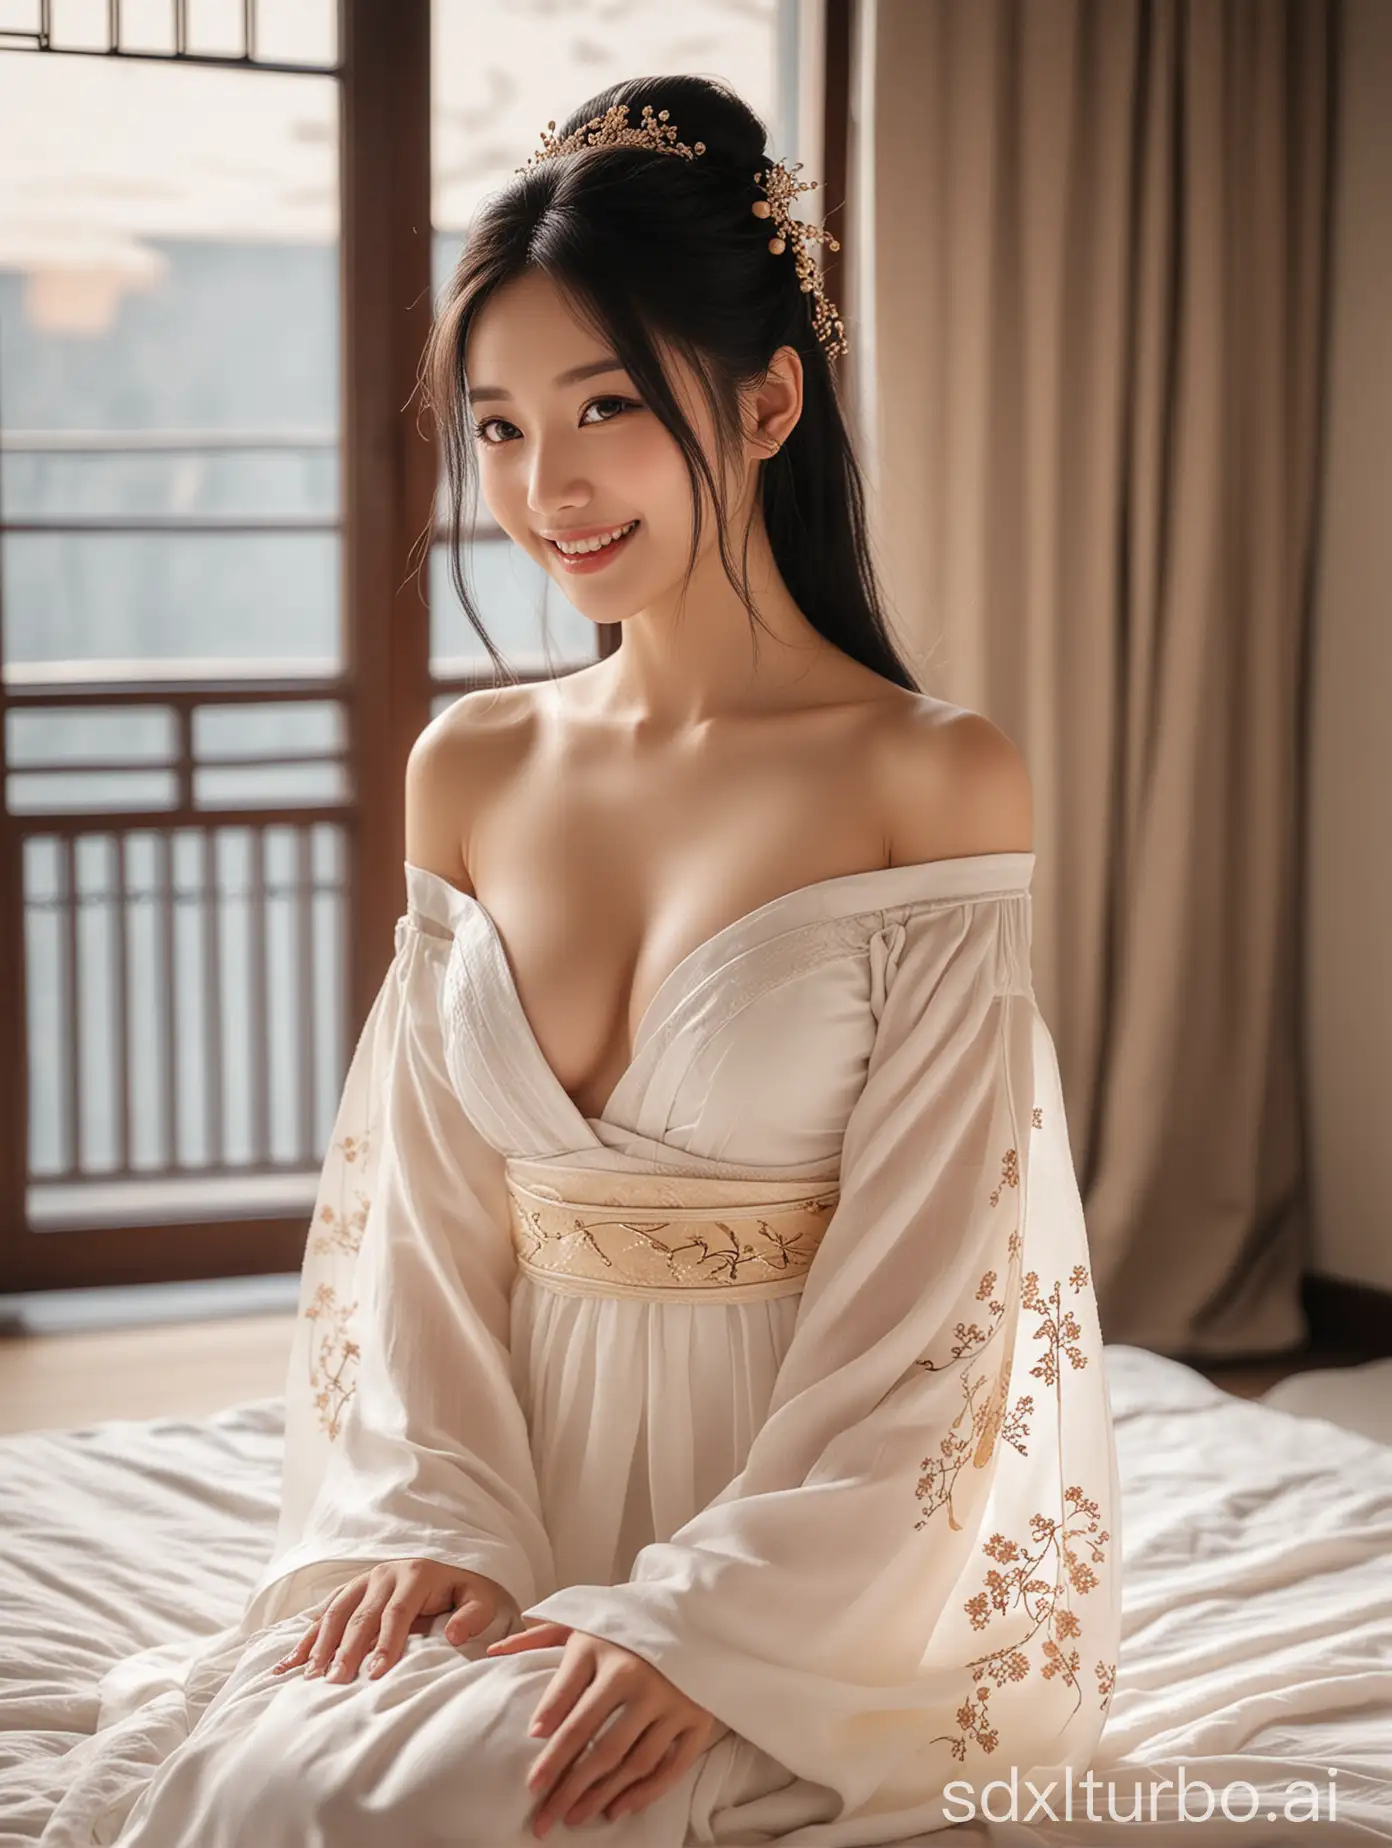 Smiling-Hanfu-Girl-with-Long-Black-Hair-in-Bedroom